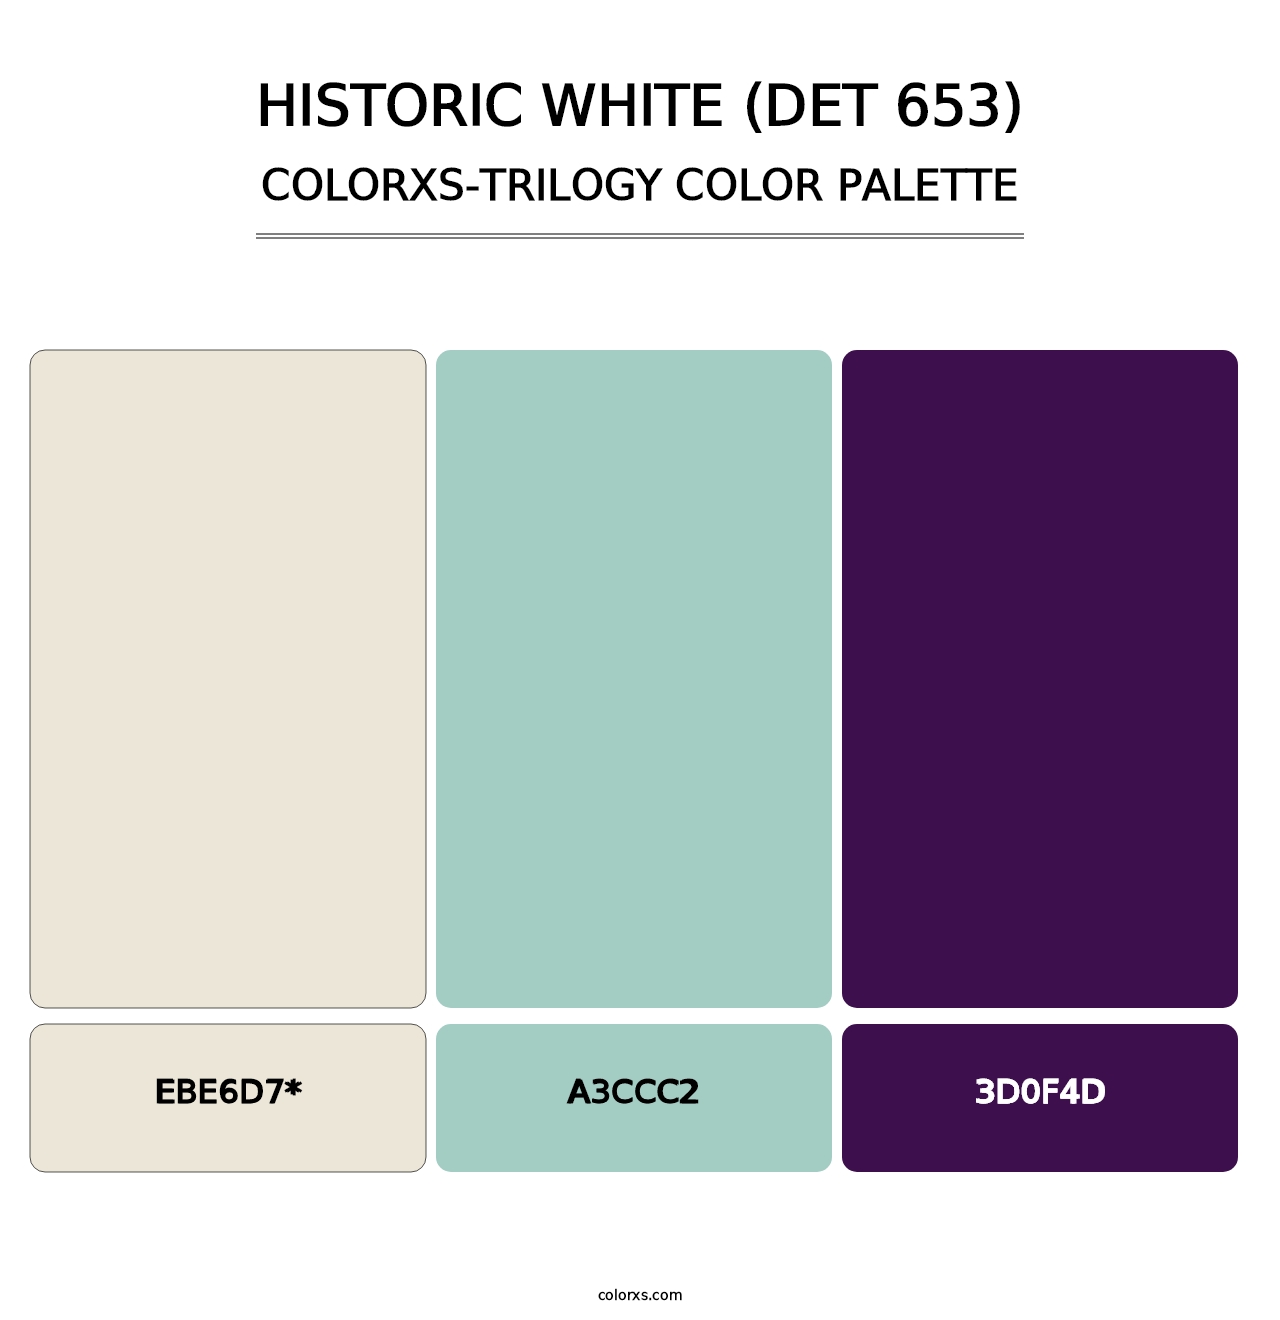 Historic White (DET 653) - Colorxs Trilogy Palette